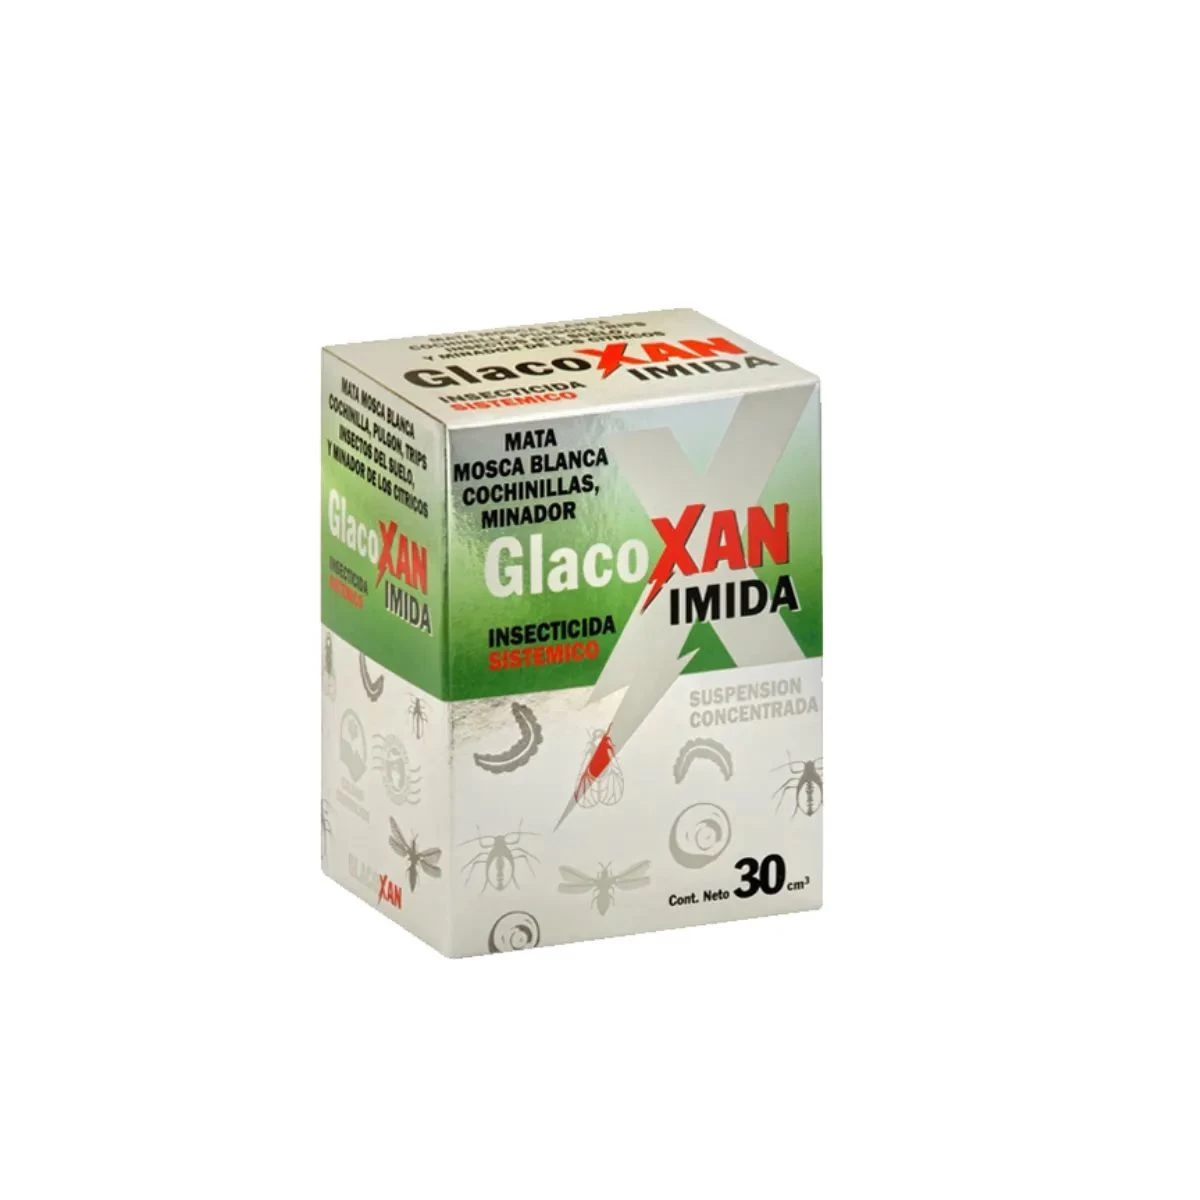 glacoxan-imida-insecticida-sistemico-30cm3